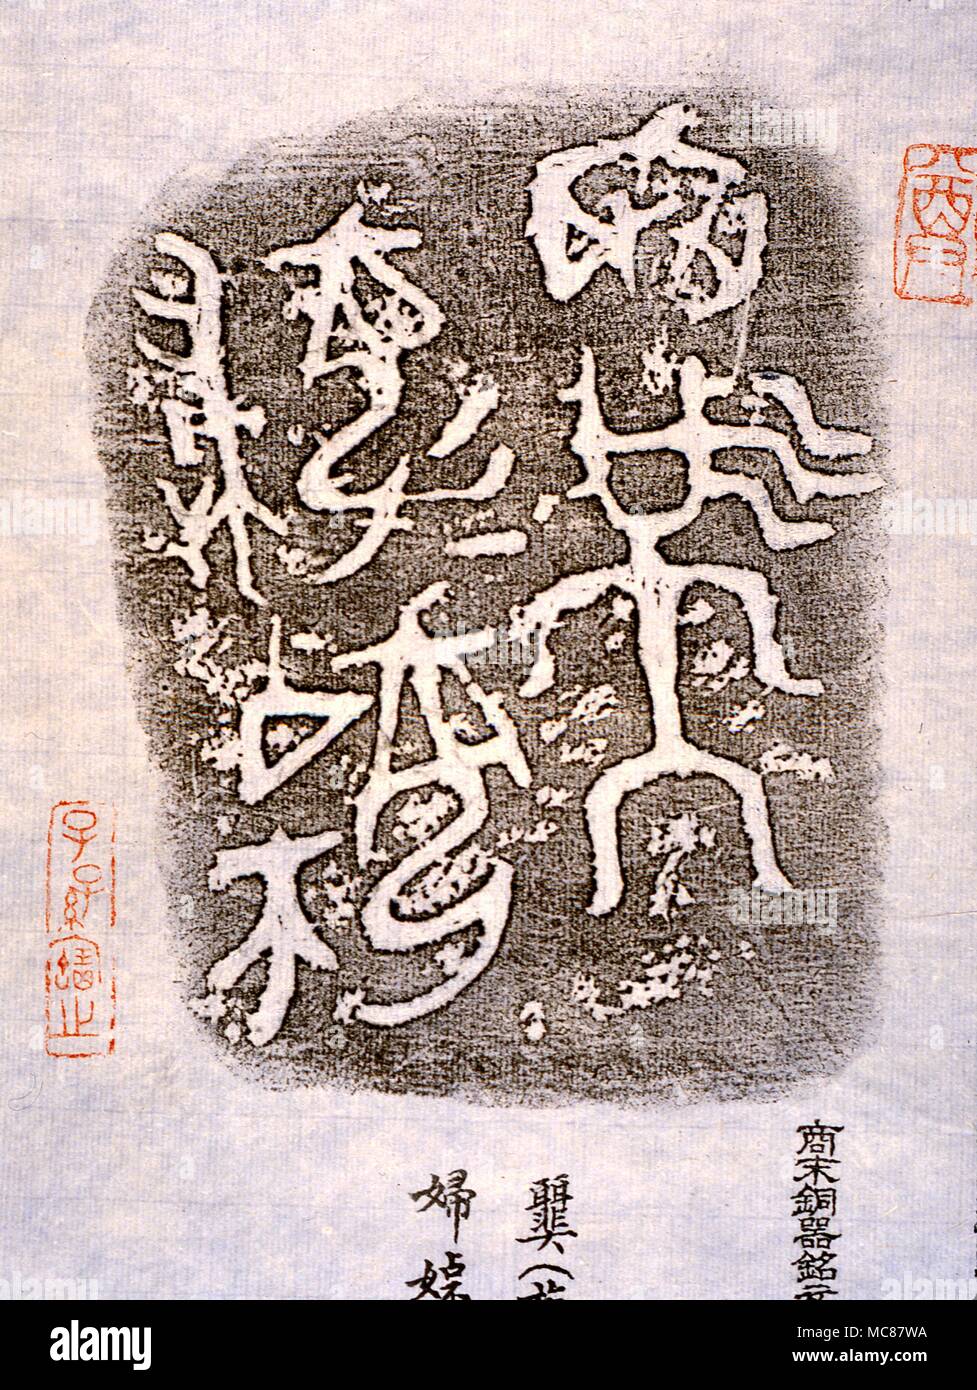 Chinesische Mythologie Frottage von der frühen Bronze utensil getroffen, Piktogramme, die später entwickelt wurden, bilden bestimmte der chinesischen Zeichen. Hongkong Stockfoto